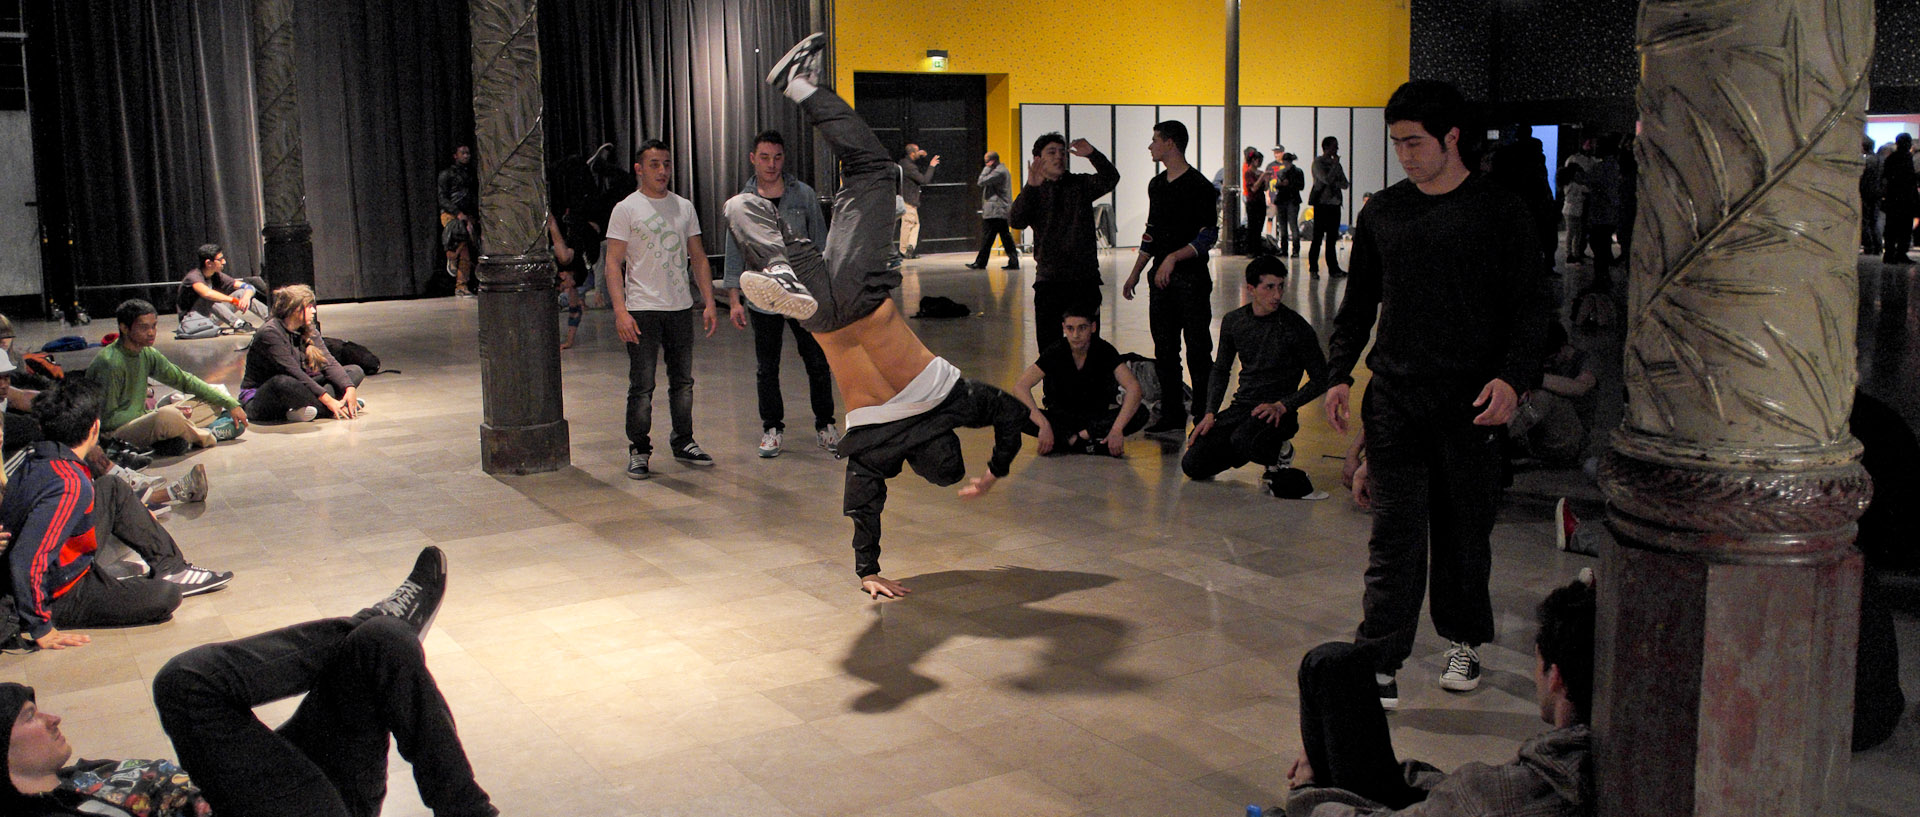 Jeunes dansant dans la salle pendant un battle de hip, salle Watremez, à Roubaix.